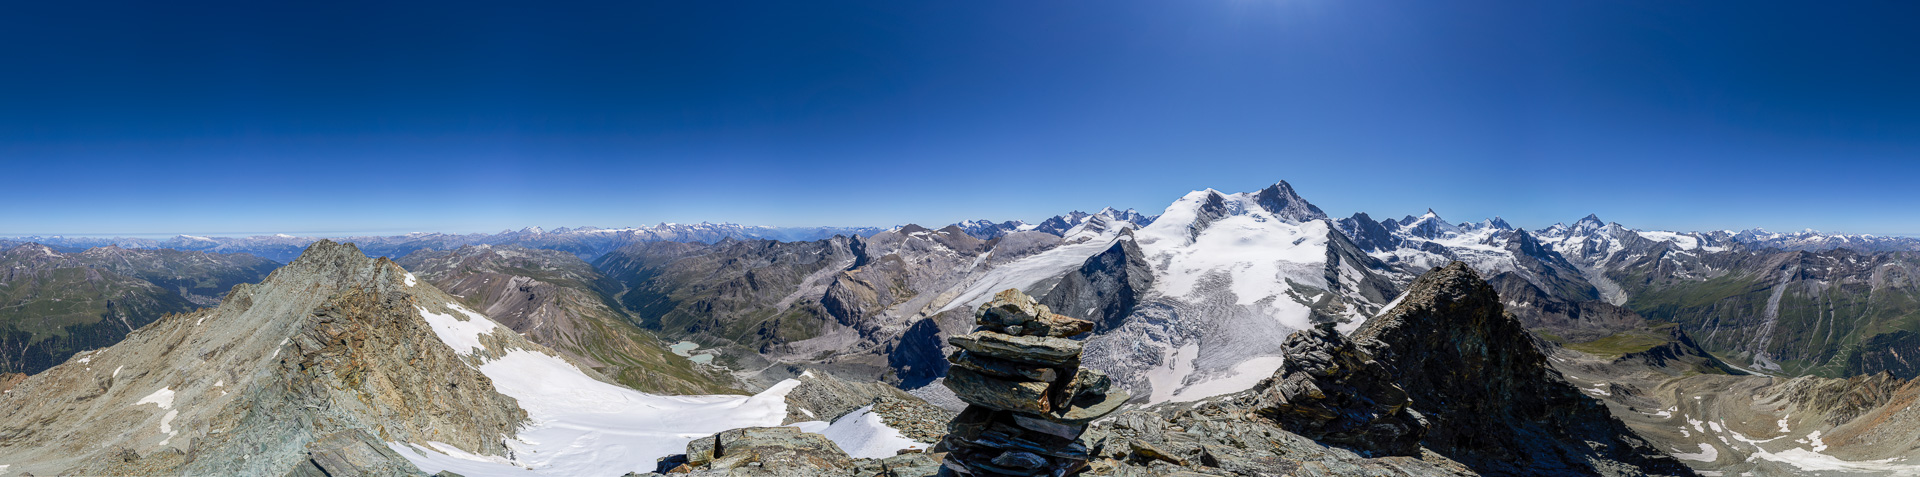 Gipfelpanorama mit dem mächtigen Turtmanngletscher am Weisshorn.